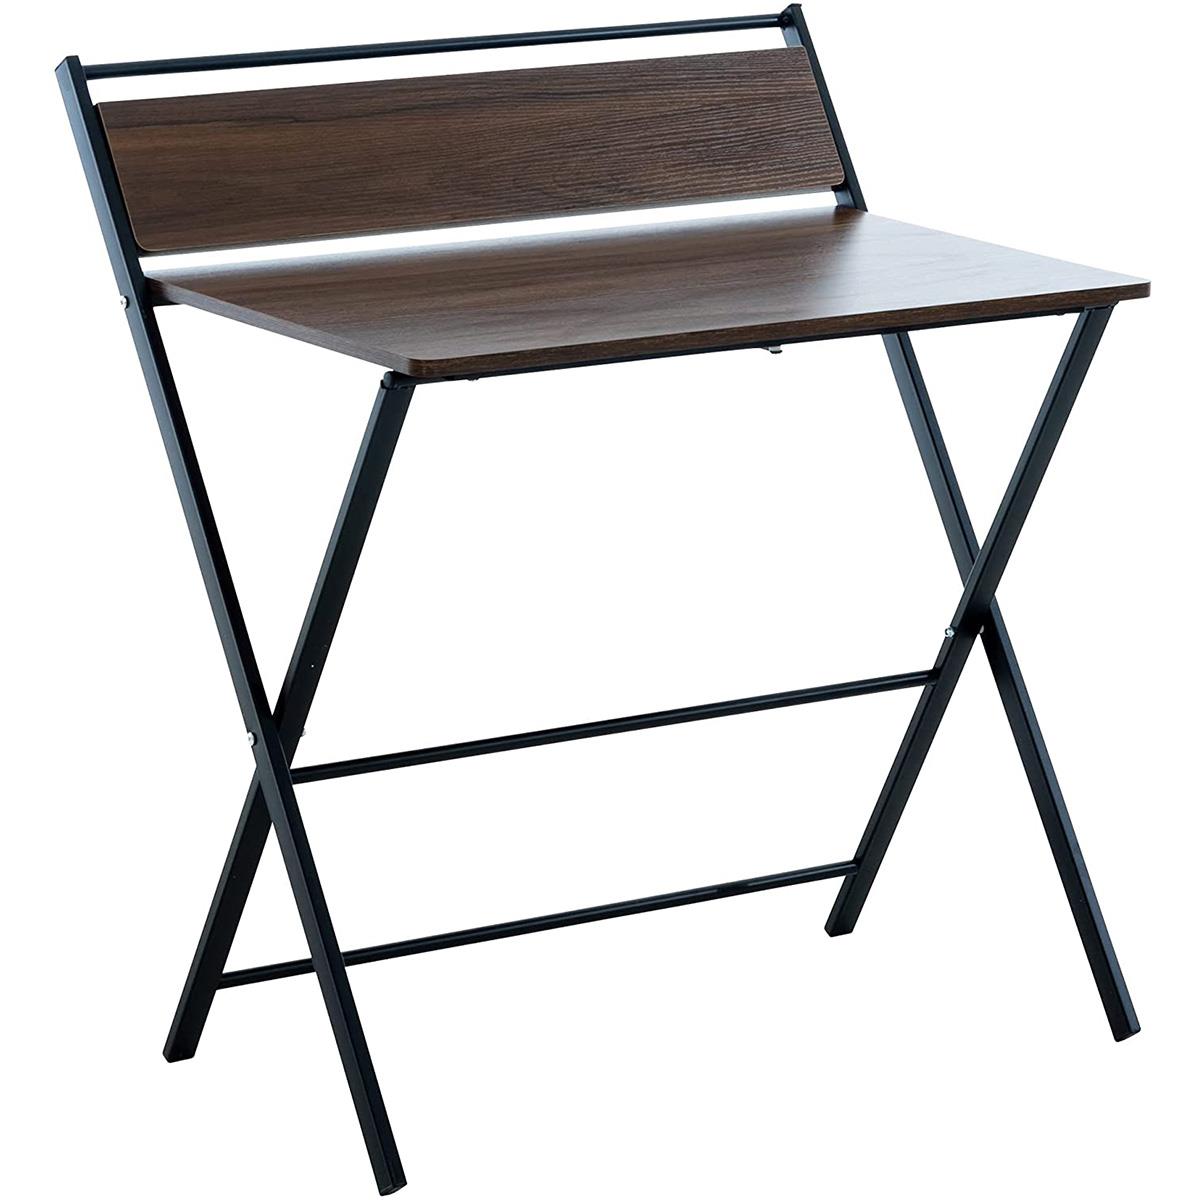 Schreibtisch FORBY, Abmessungen 84x62x93 cm, zusammenklappbar, Metall und Holz, Farbe Walnuss